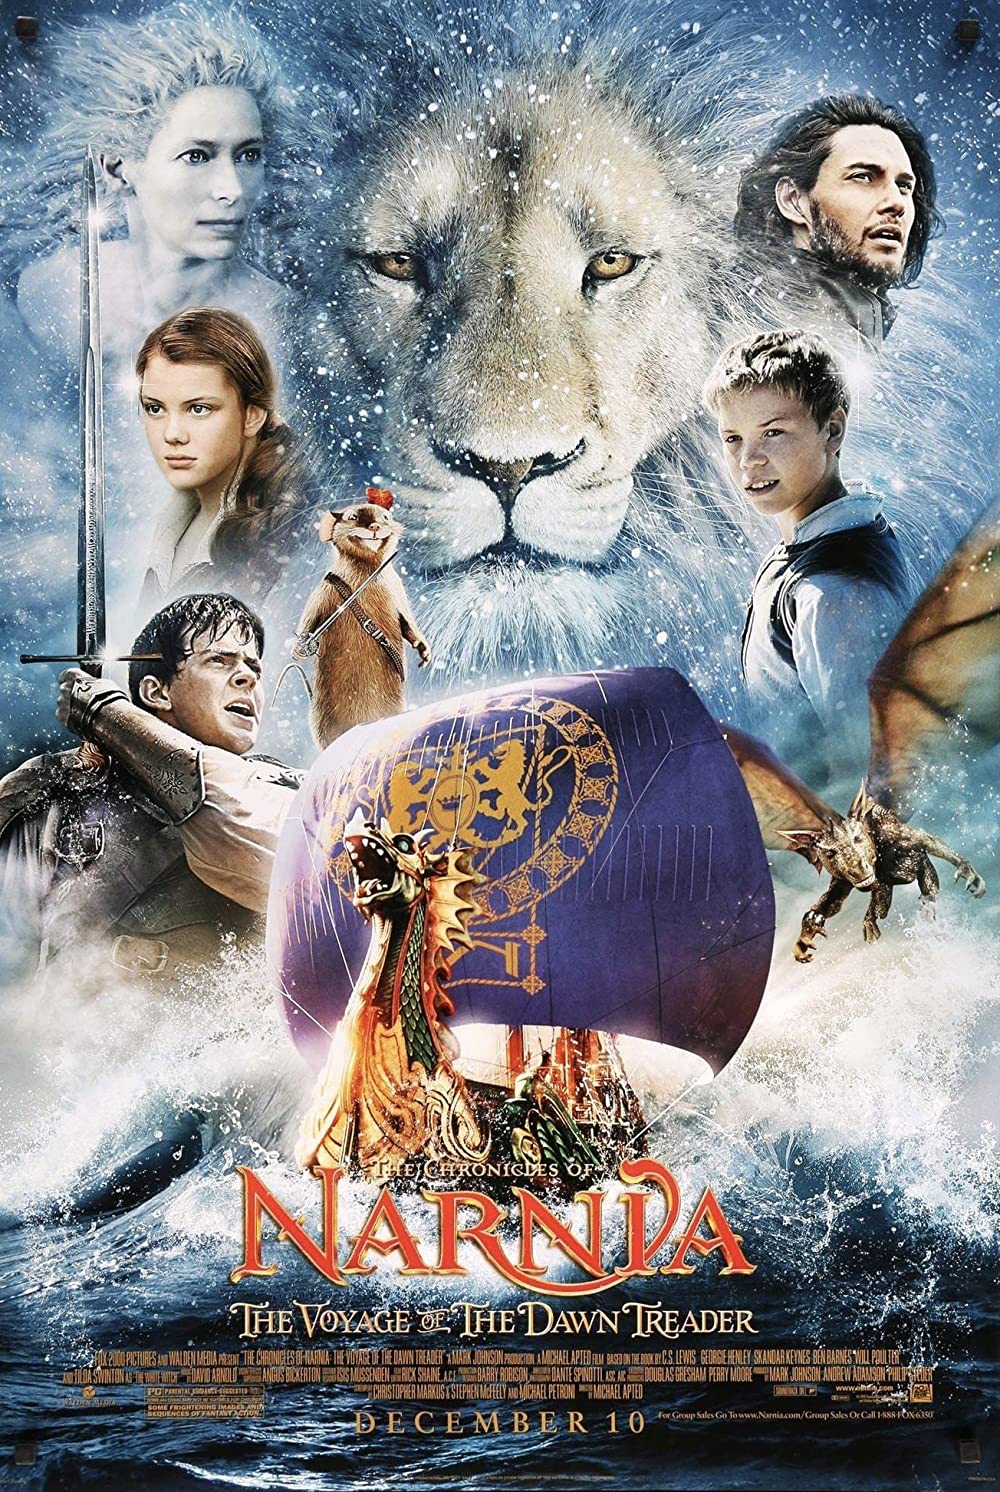 Filmbeschreibung zu Die Chroniken von Narnia: Die Reise auf der Morgenröte